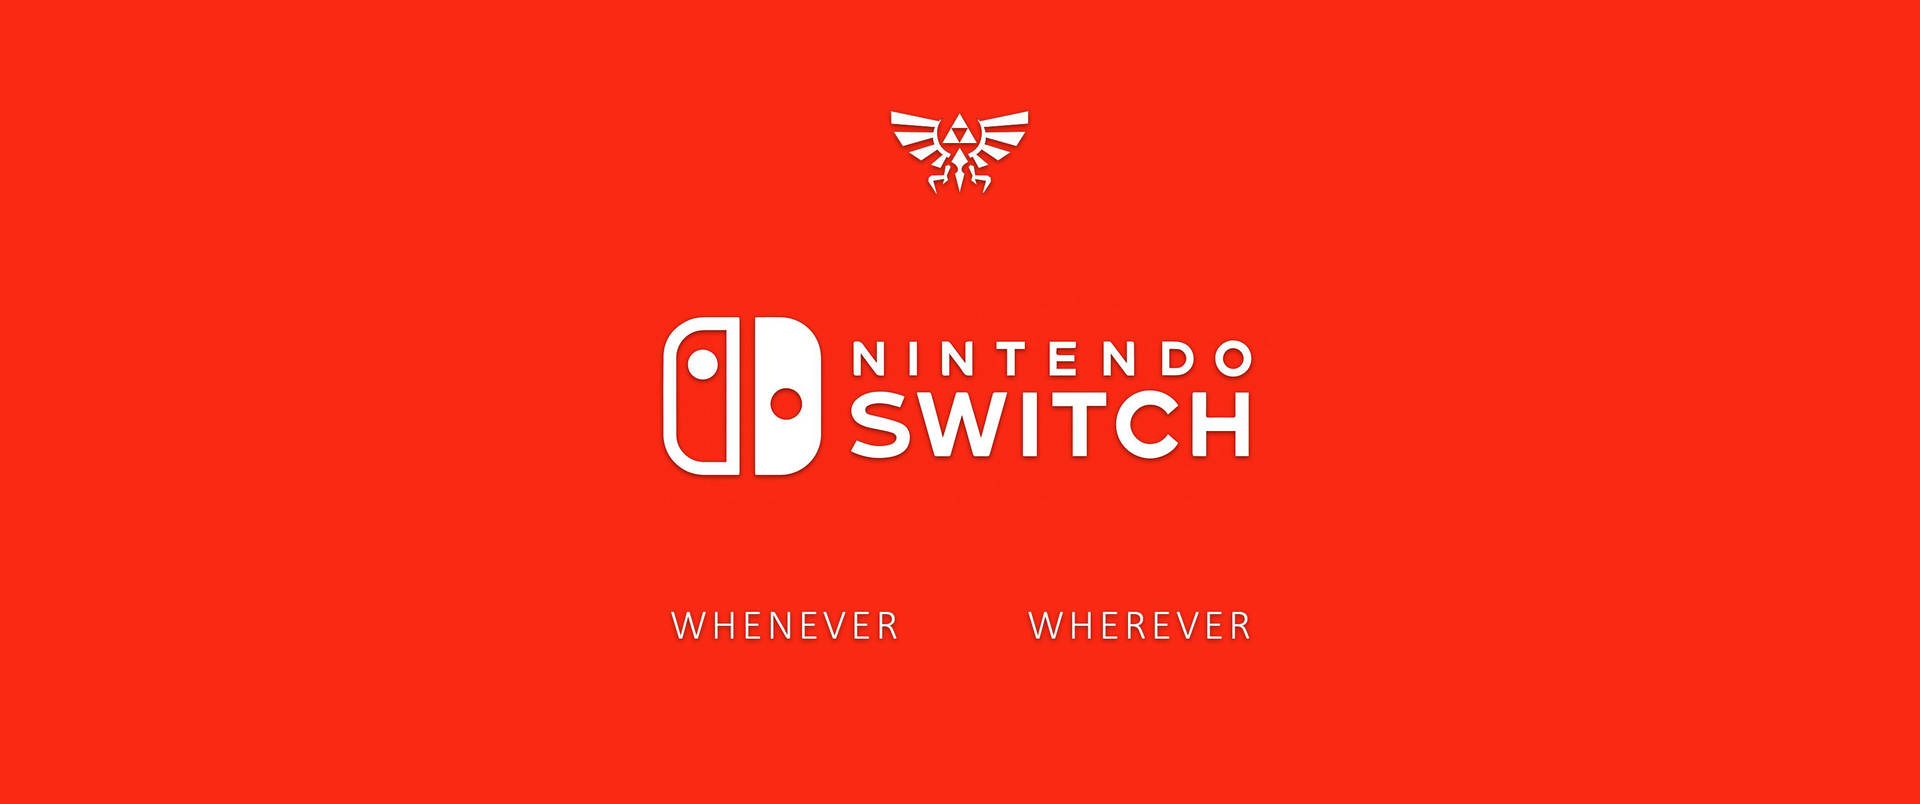 Nintendo Switch Whenever Wherever Wallpaper